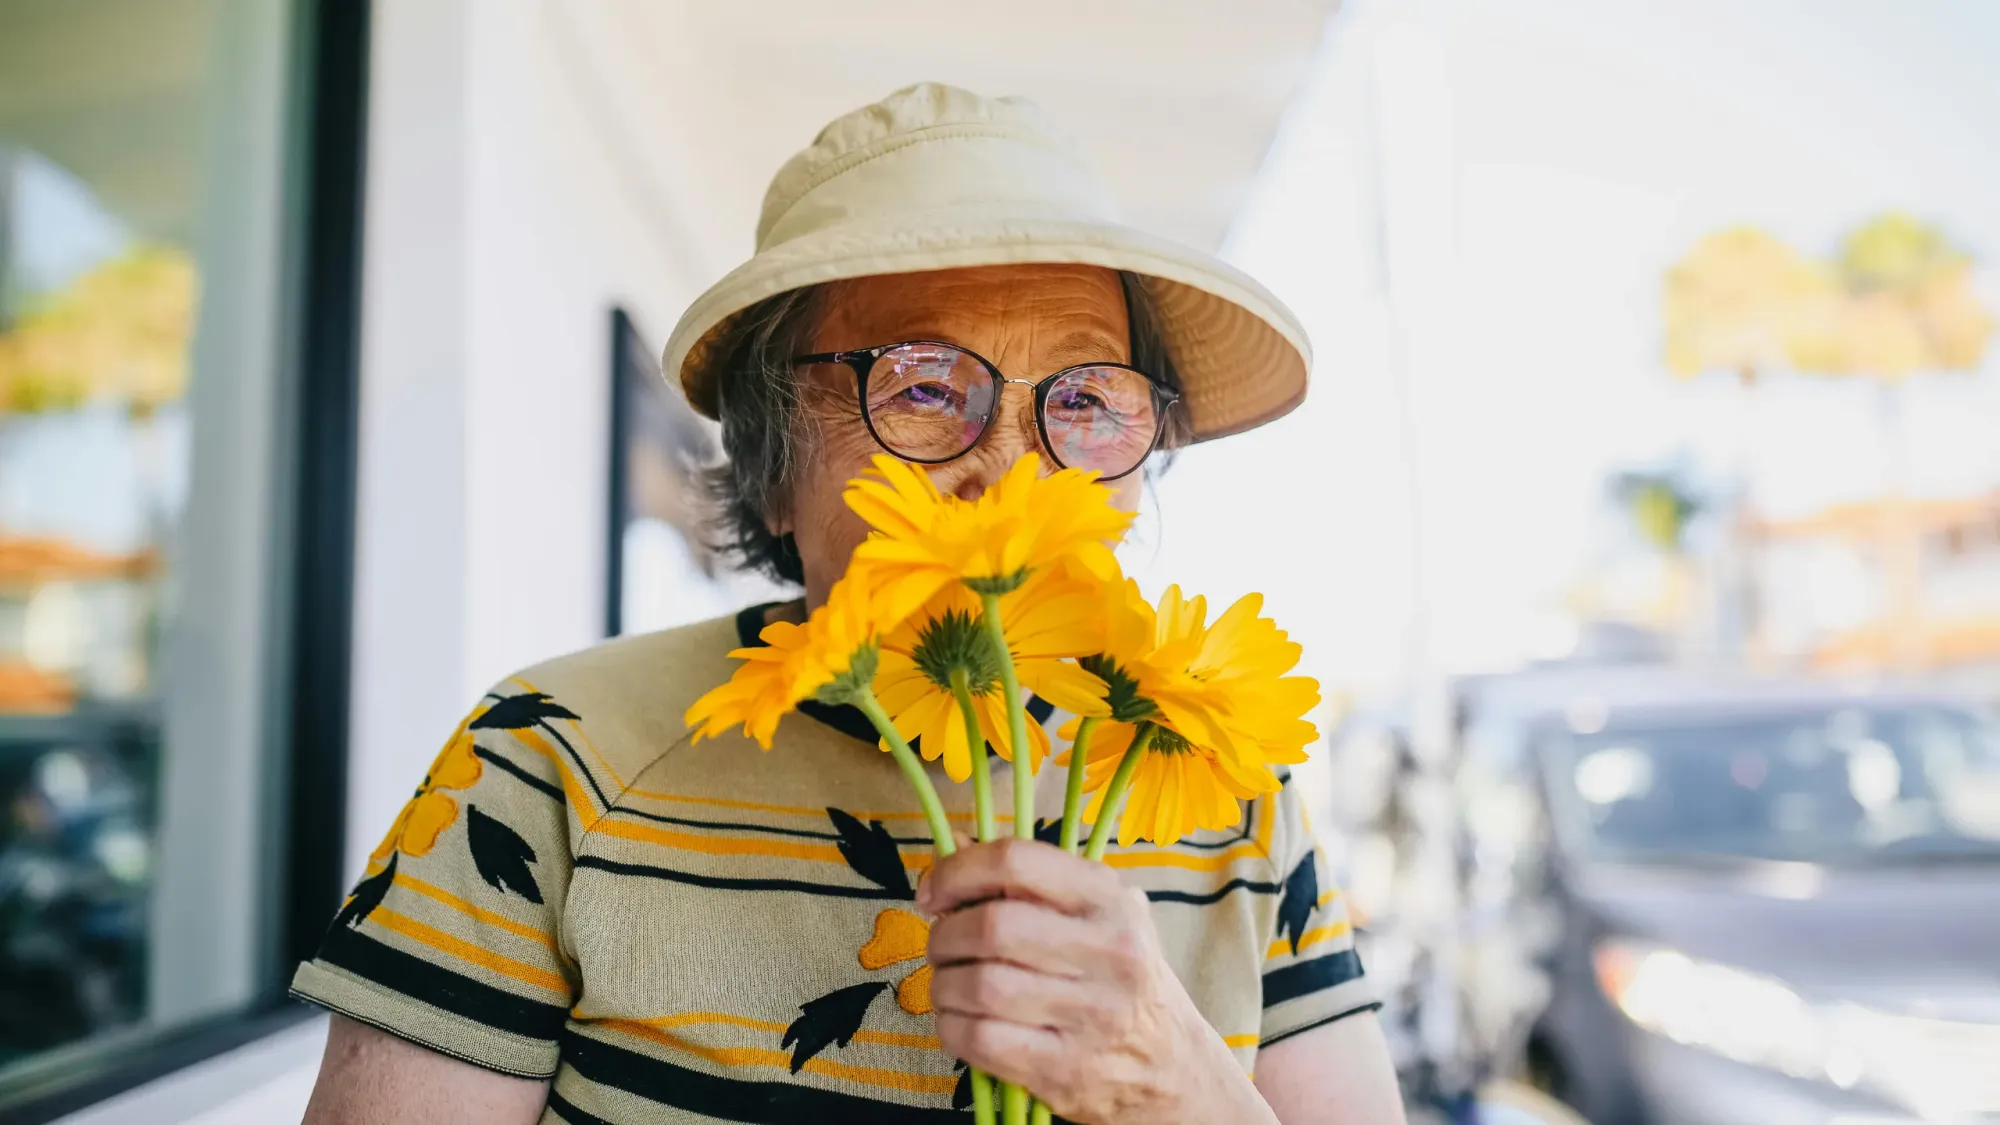 Eldery woman smelling yellow daisy flowers.